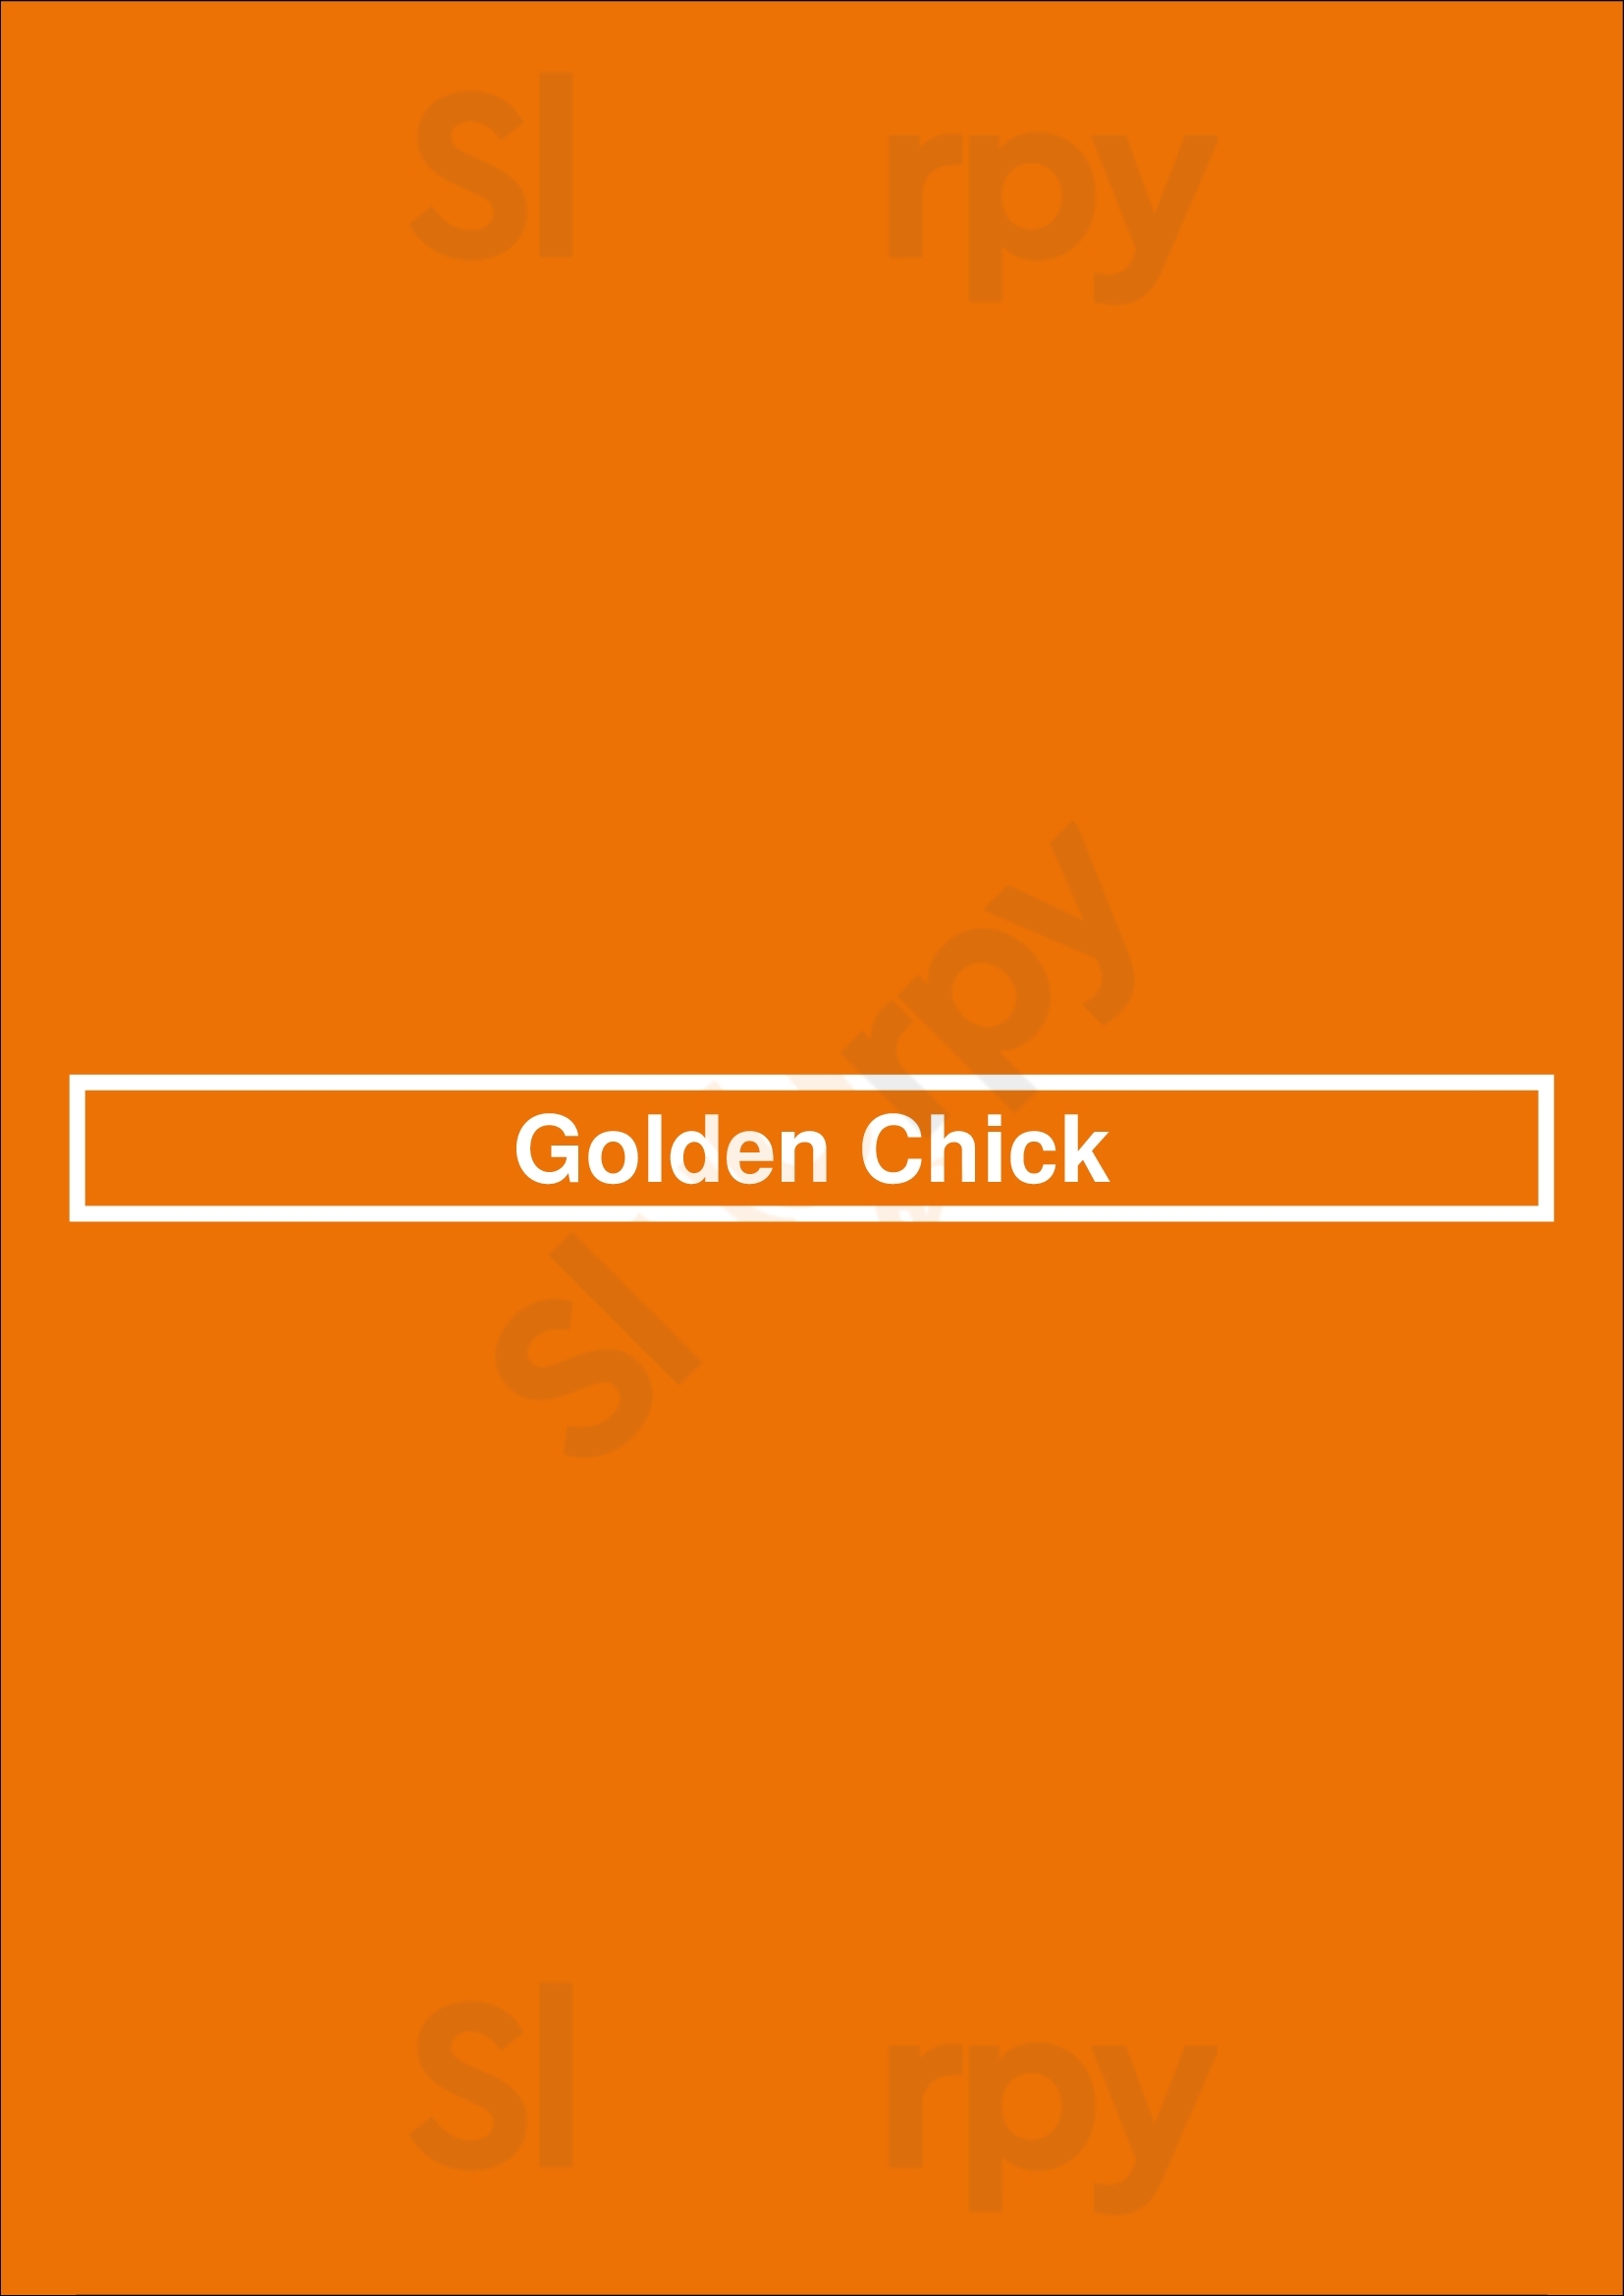 Golden Chick Dallas Menu - 1